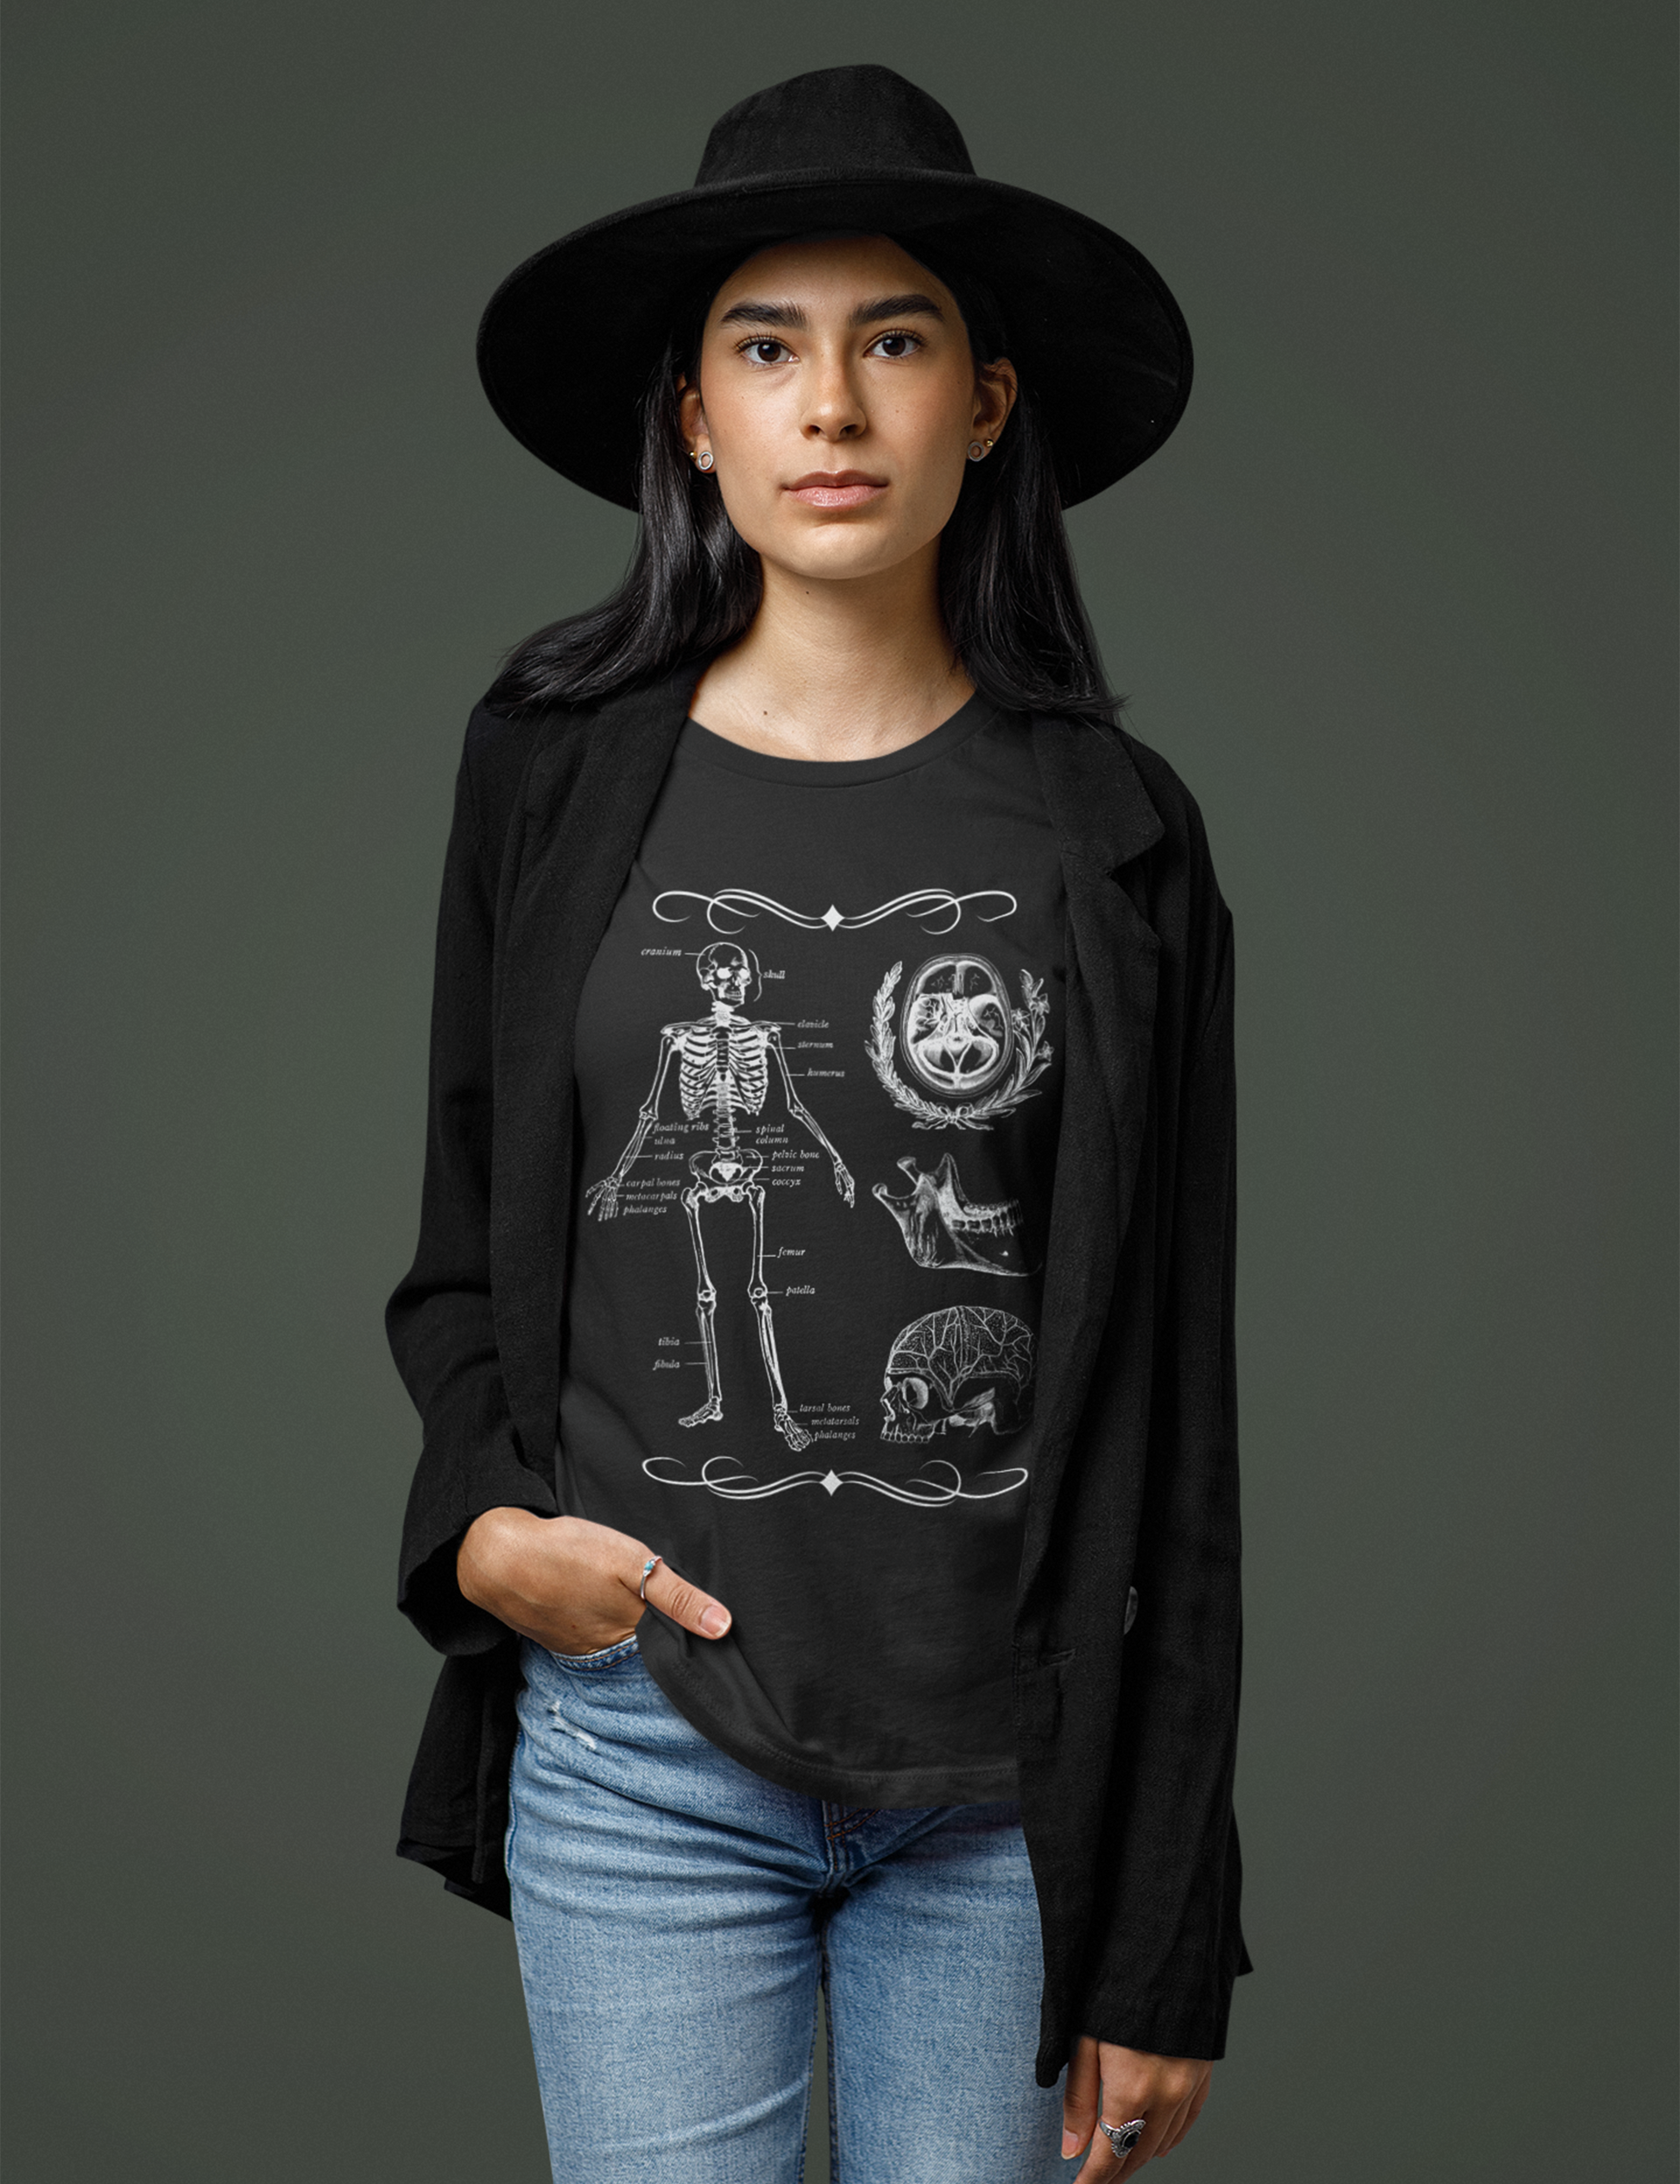 Dark Academia Aesthetic Outfits Plus Size Skeleton Shirt